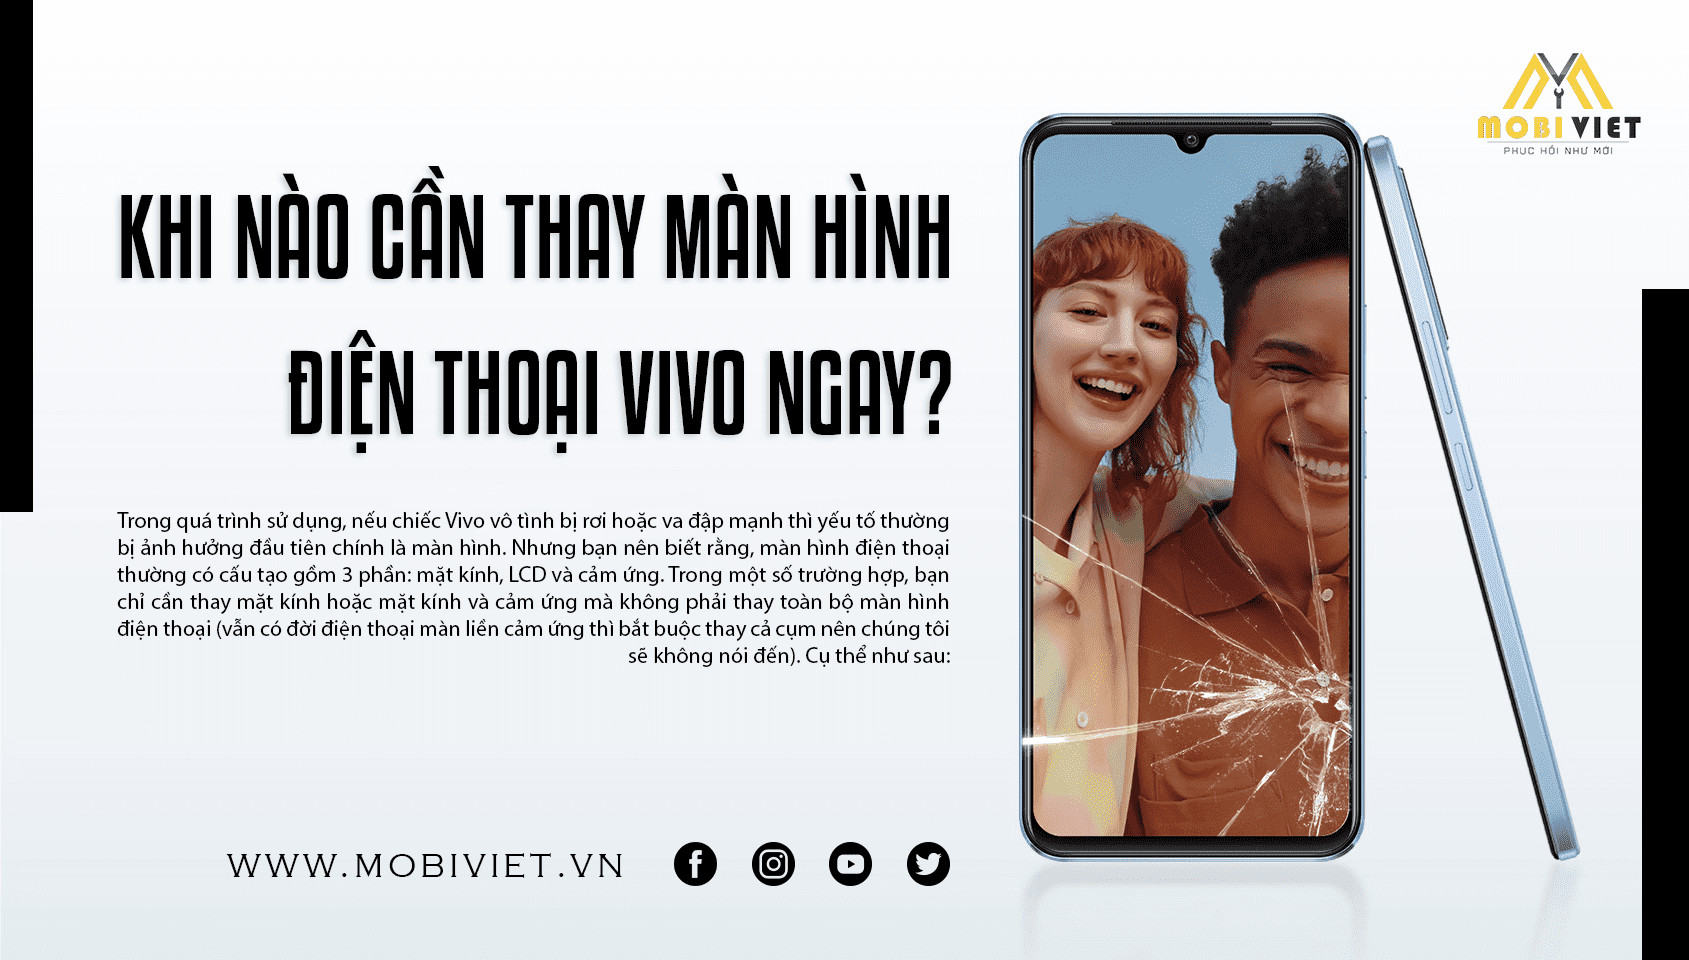 Khi nào cần thay màn hình điện thoại Vivo ngay?